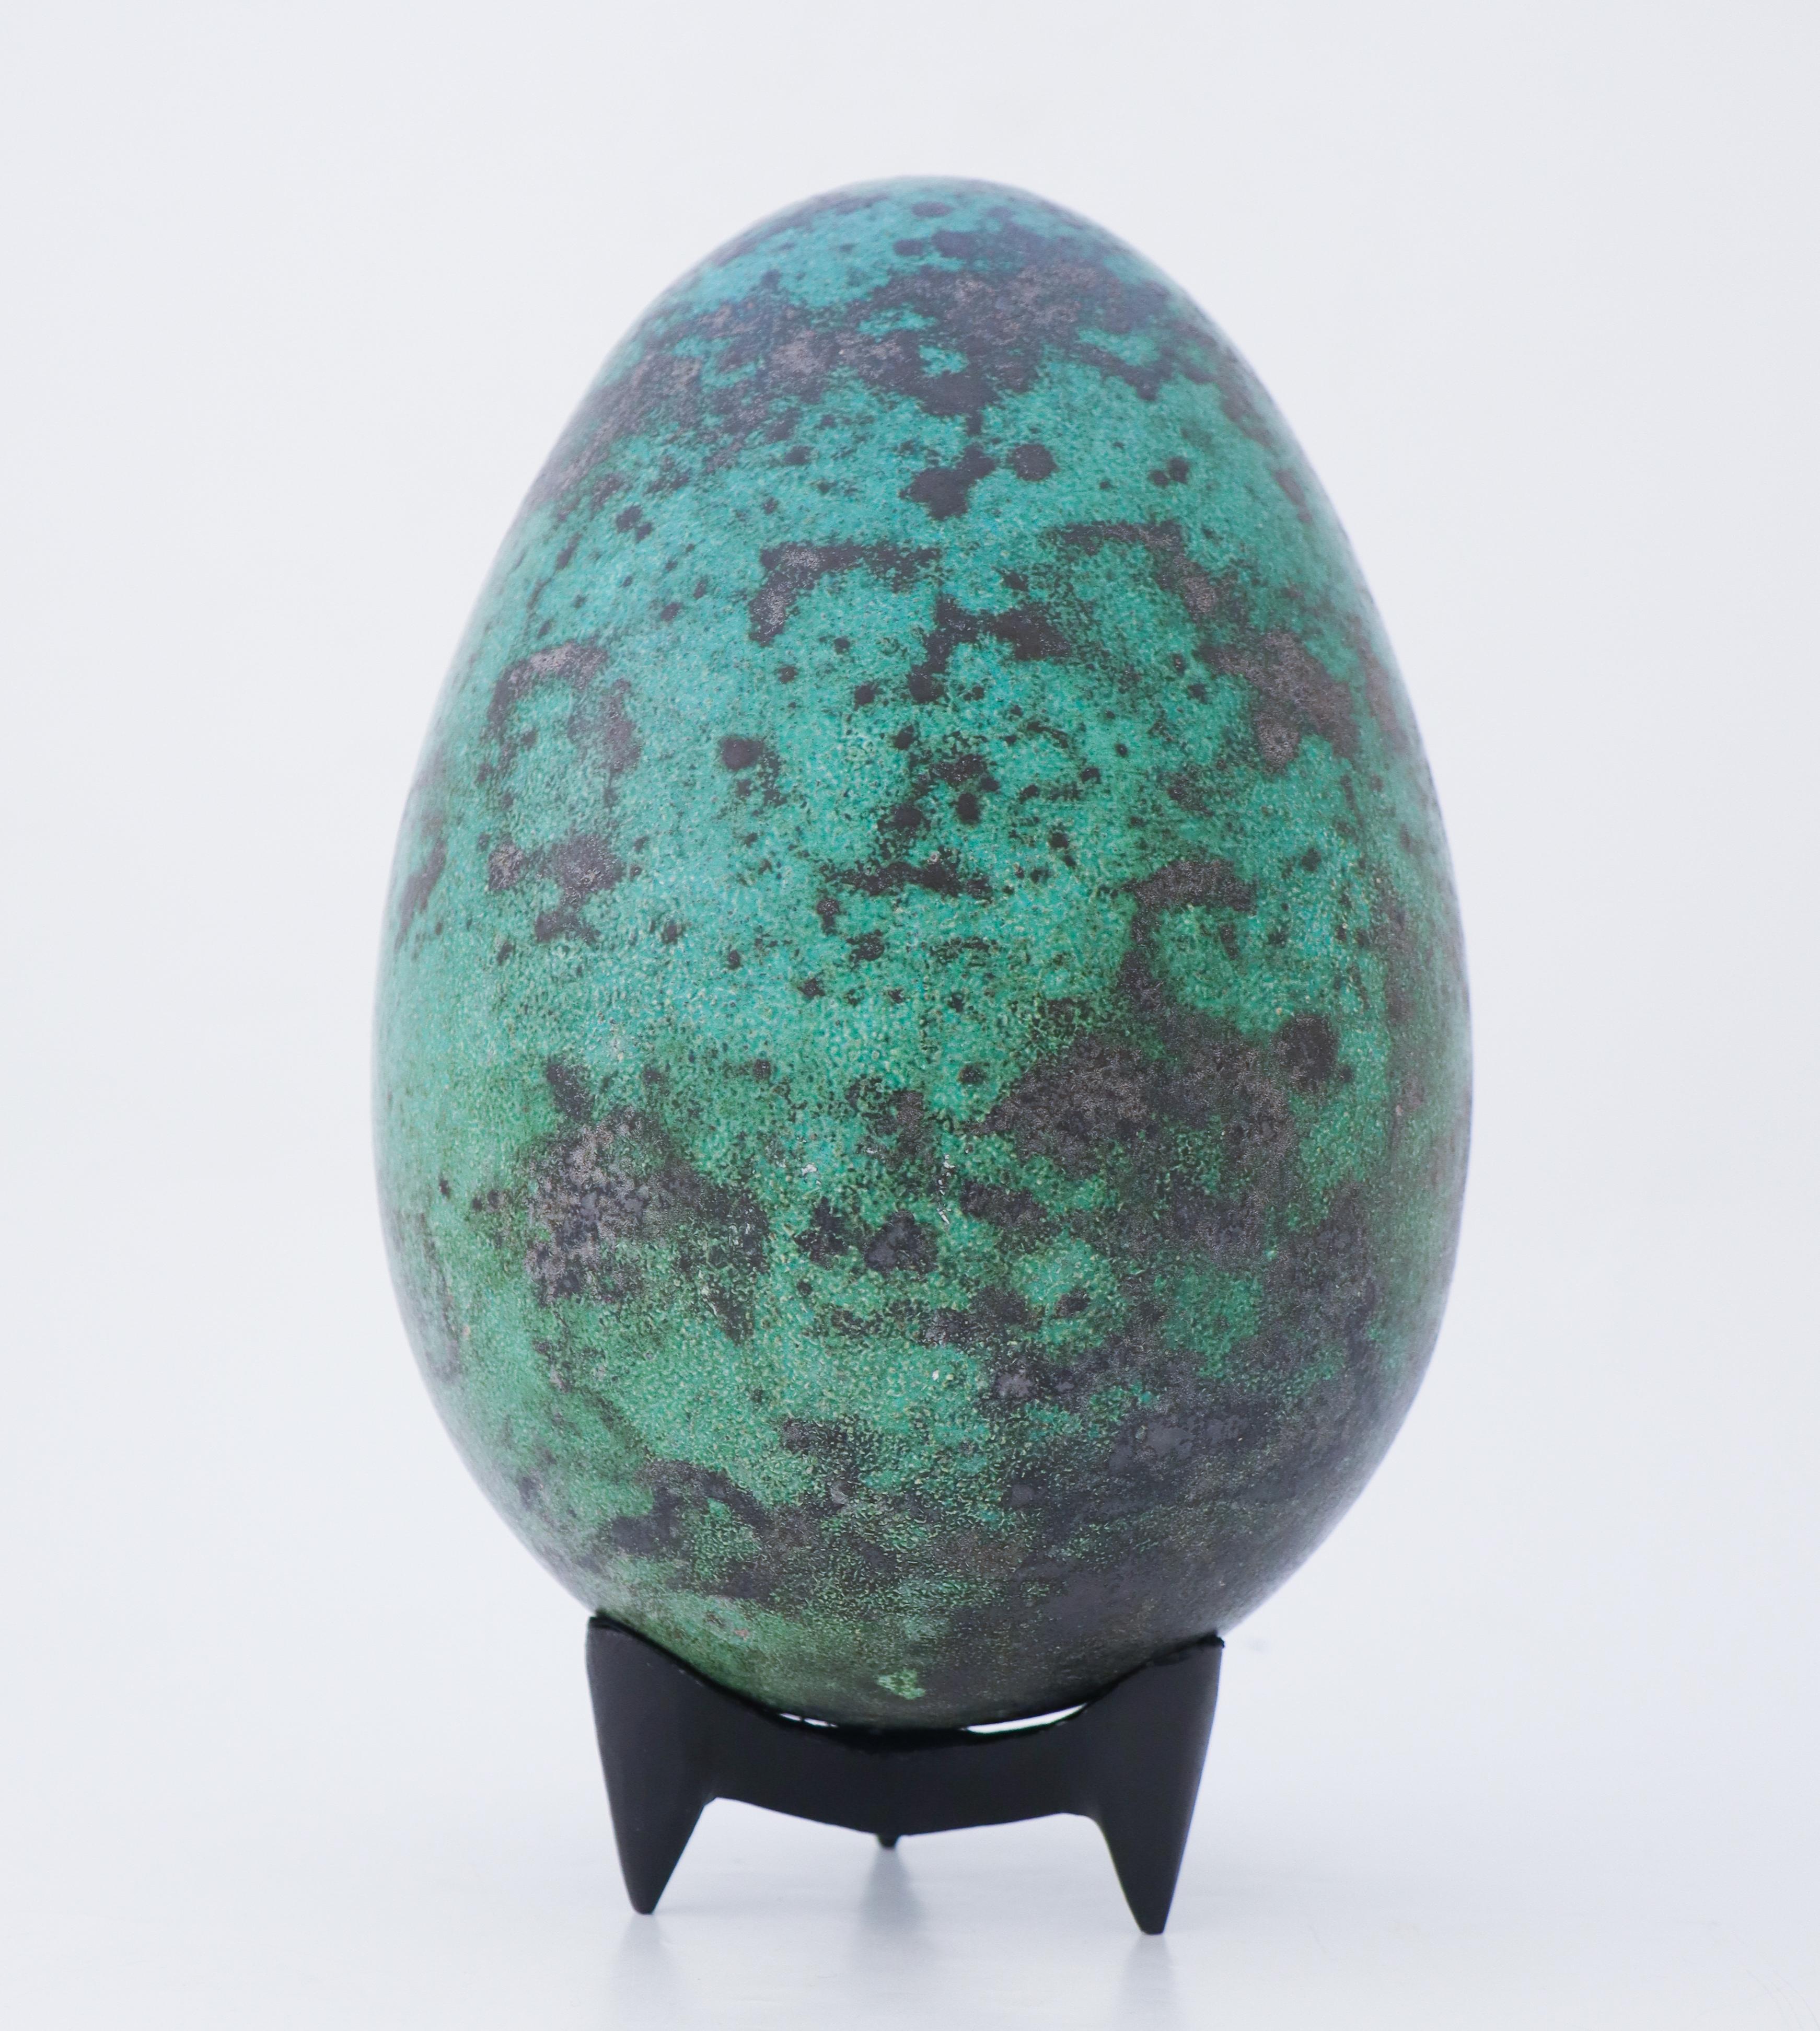 Das Ei wurde von dem schwedischen Keramiker Hans Hedberg entworfen, der in Biot, Frankreich, lebte und arbeitete. Dieses Ei ist 30 cm (12